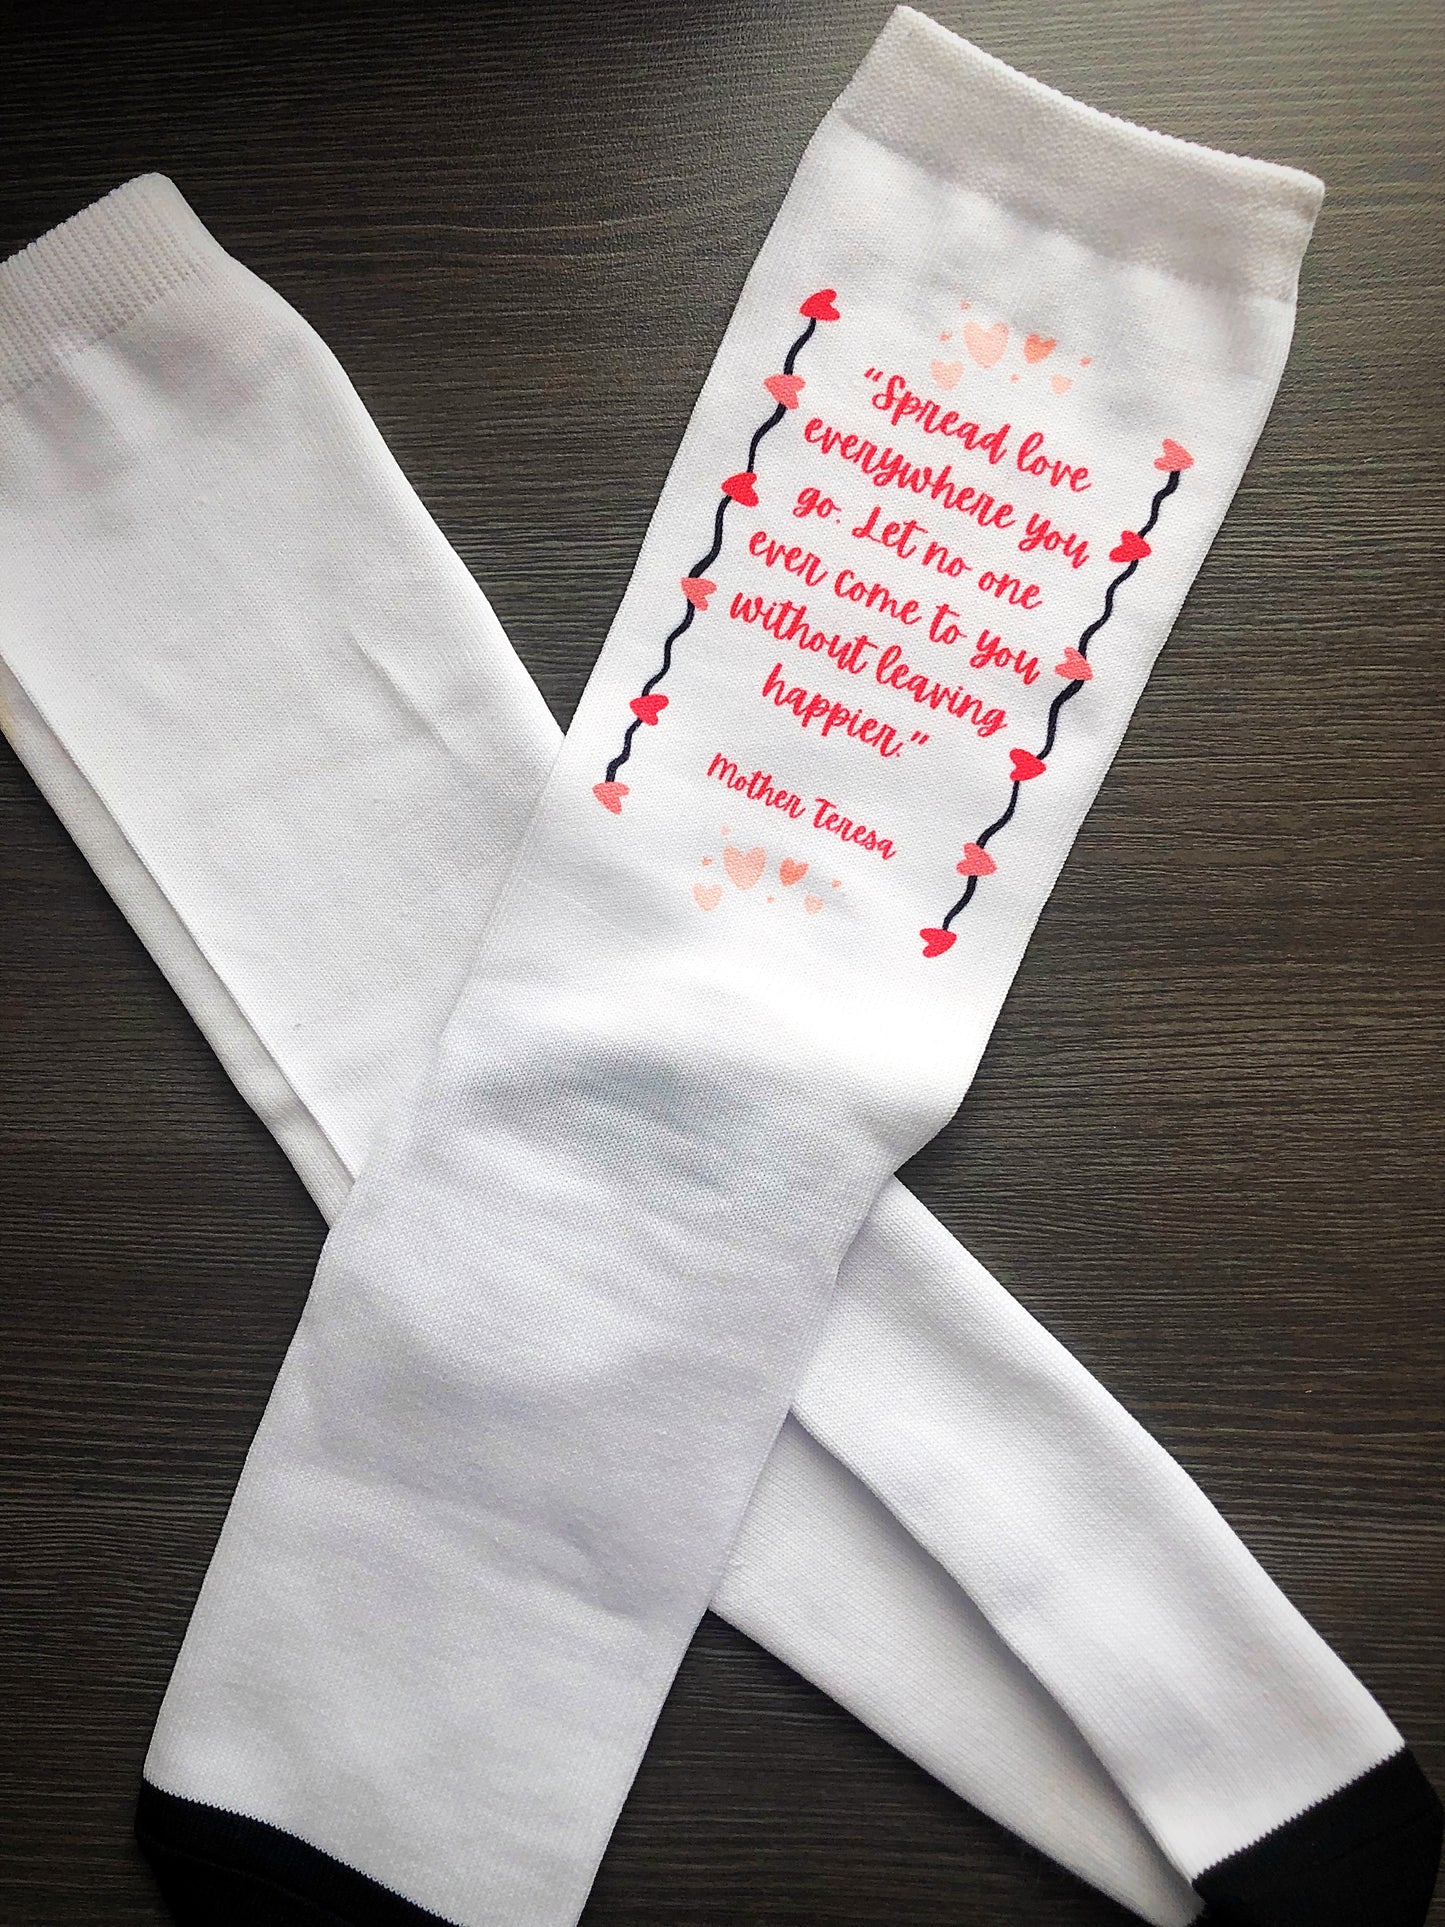 Catholic Valentine's Socks - Catholic Valentine Gift for her